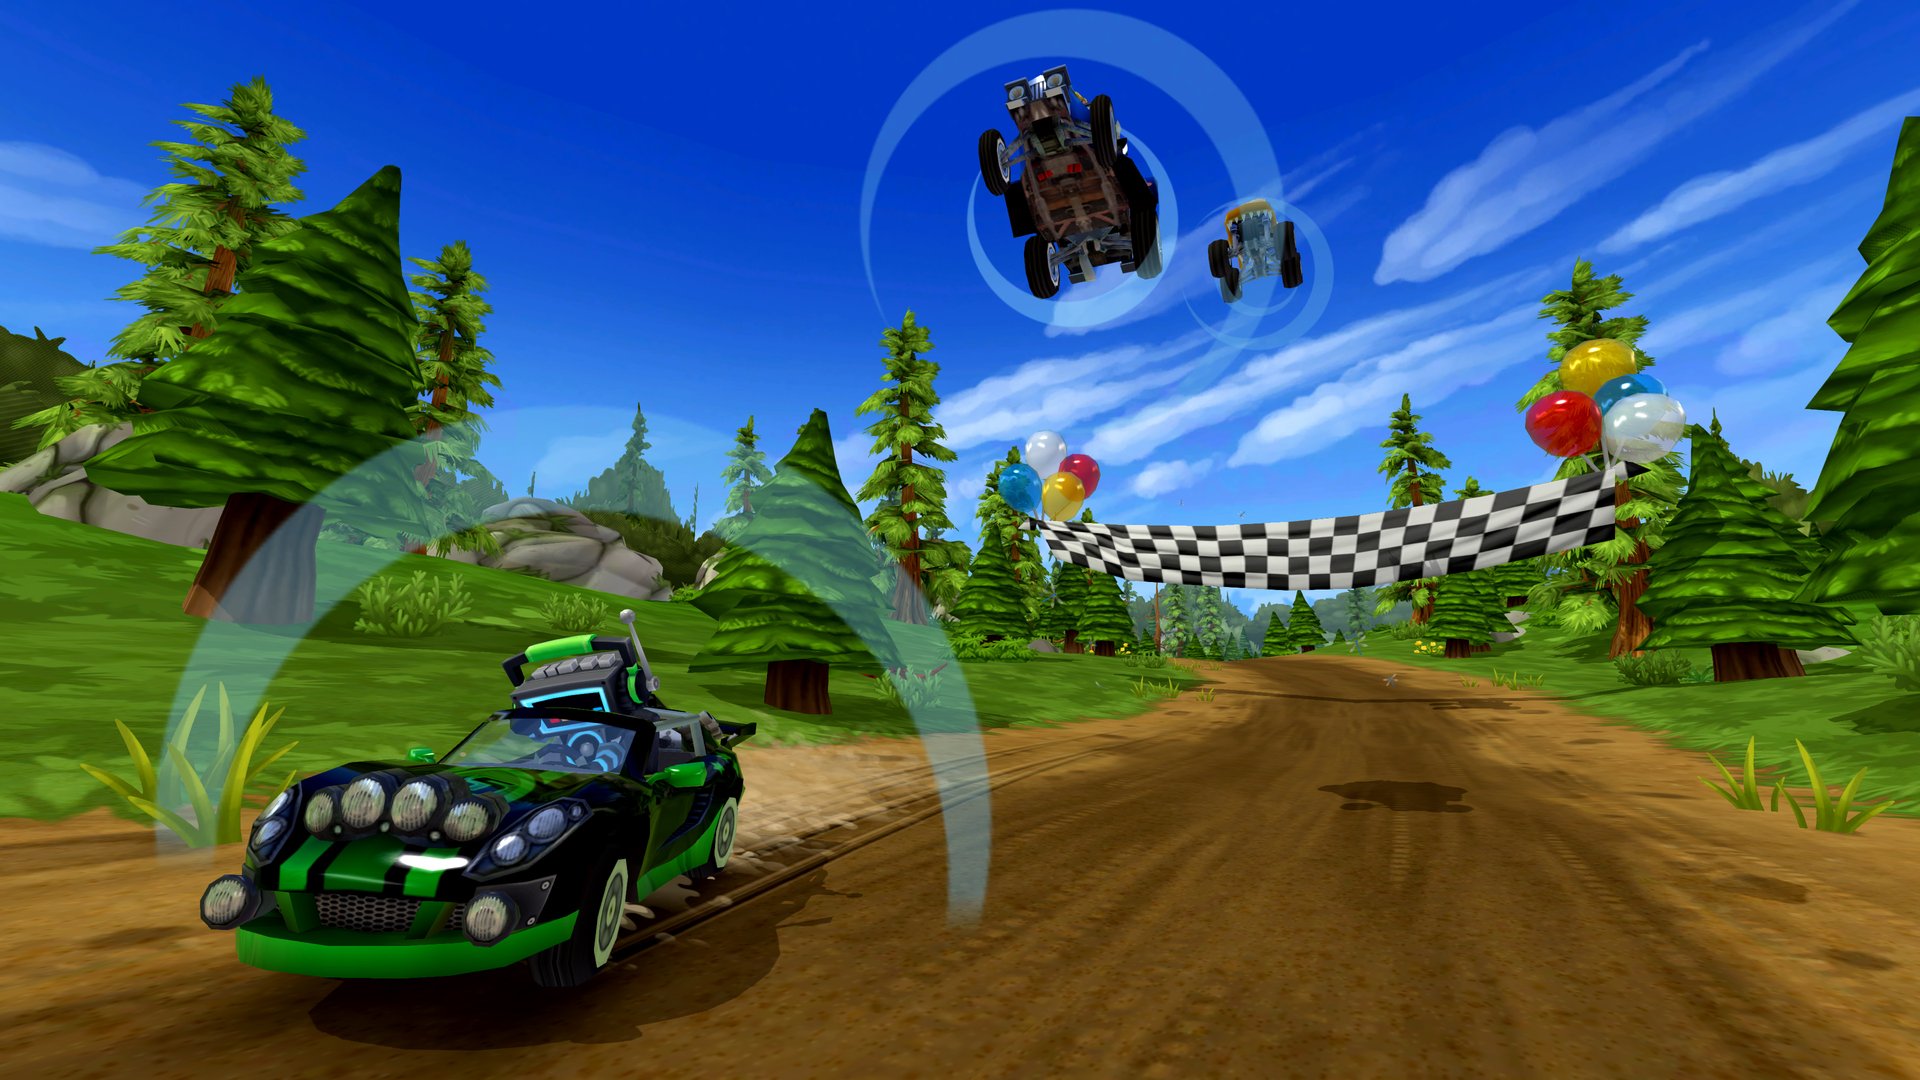 Desktop Racing 2 - Jogue Desktop Racing 2 Jogo Online